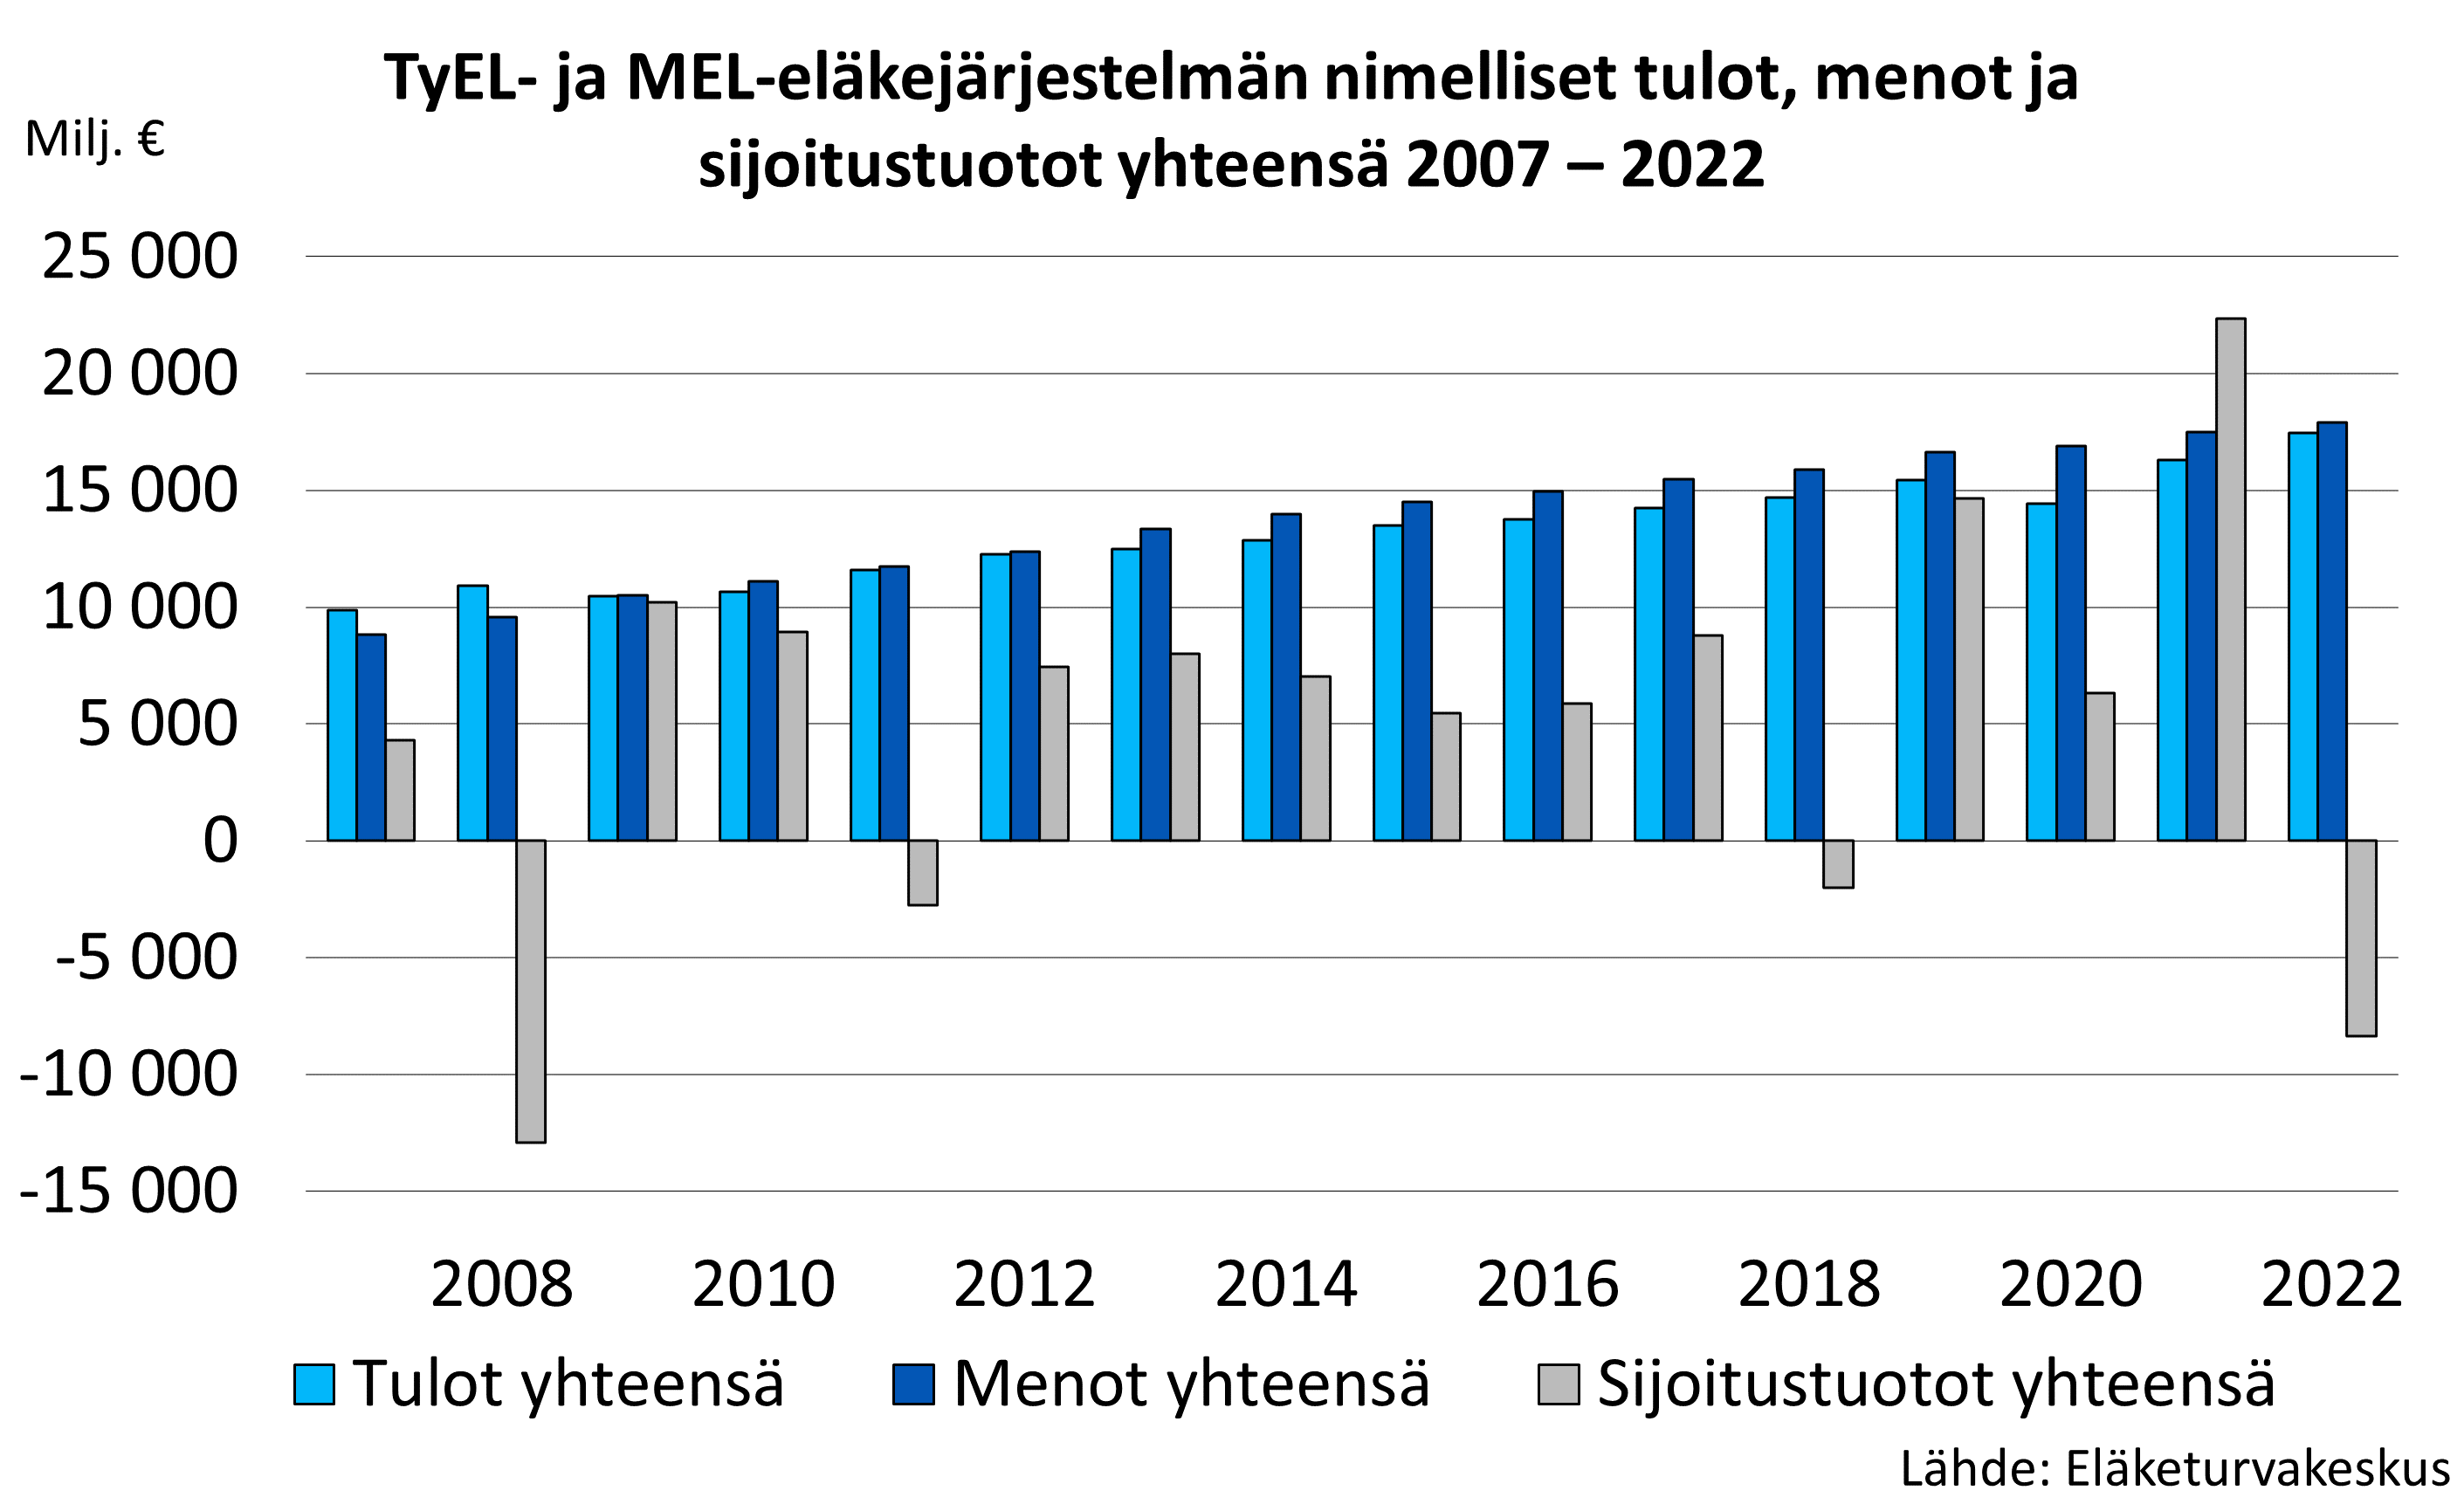 TyEL- ja MEL-eläkejärjestelmän nimelliset tulot, menot ja sijoitustuotot yhteensä 2007 – 2020